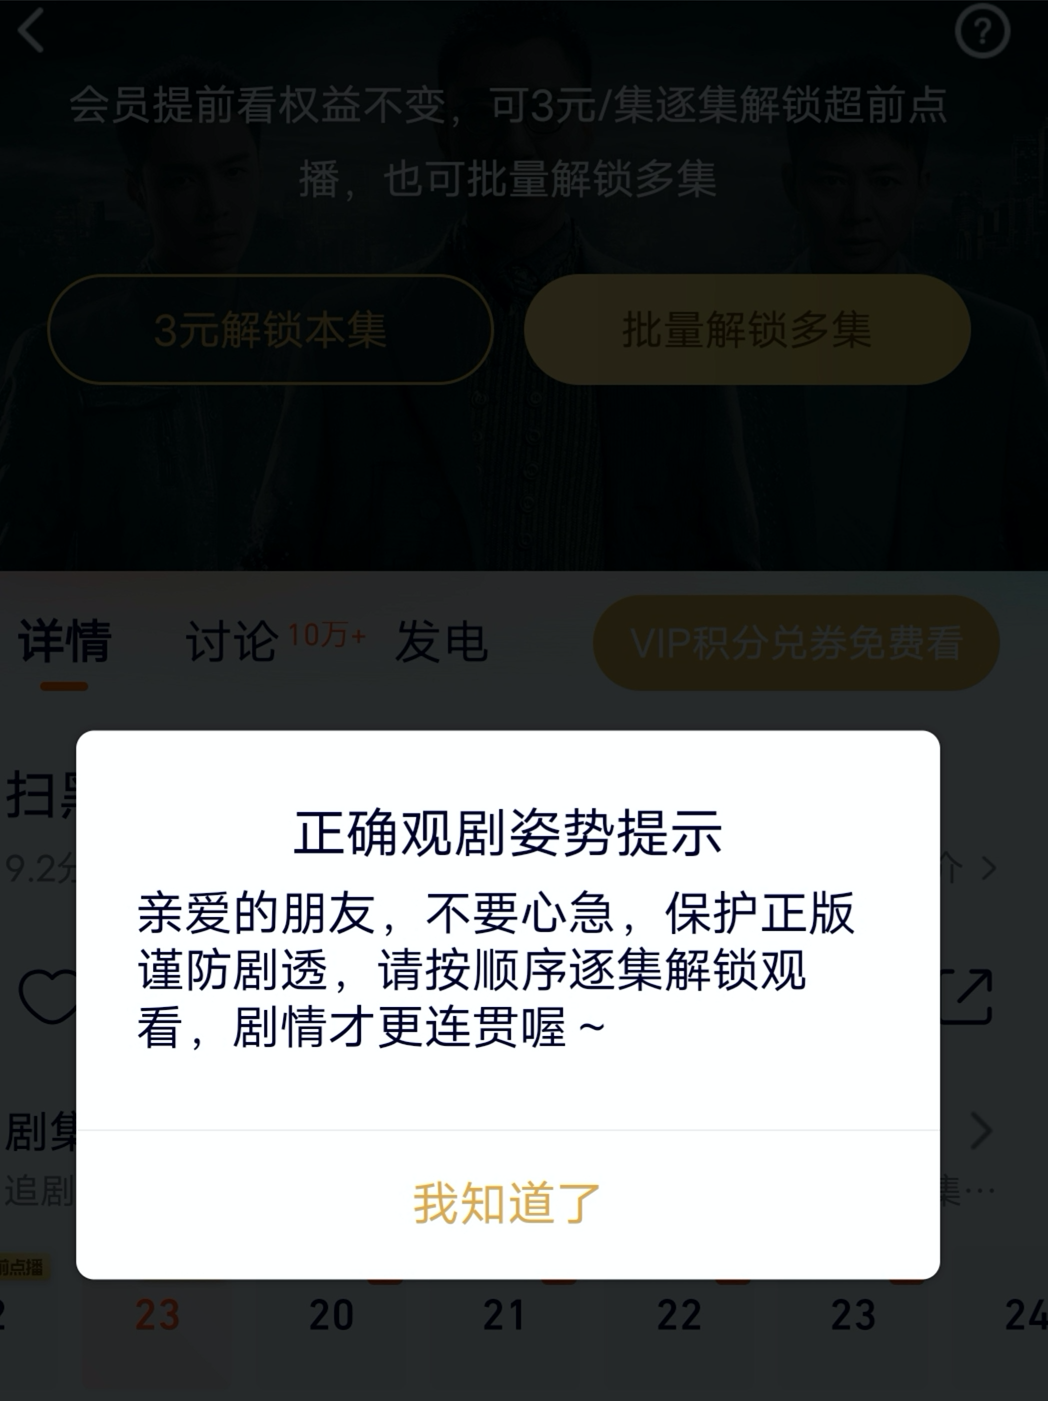 上海消保委：《扫黑风暴》超前点播涉嫌捆绑销售，漠视消费者选择权